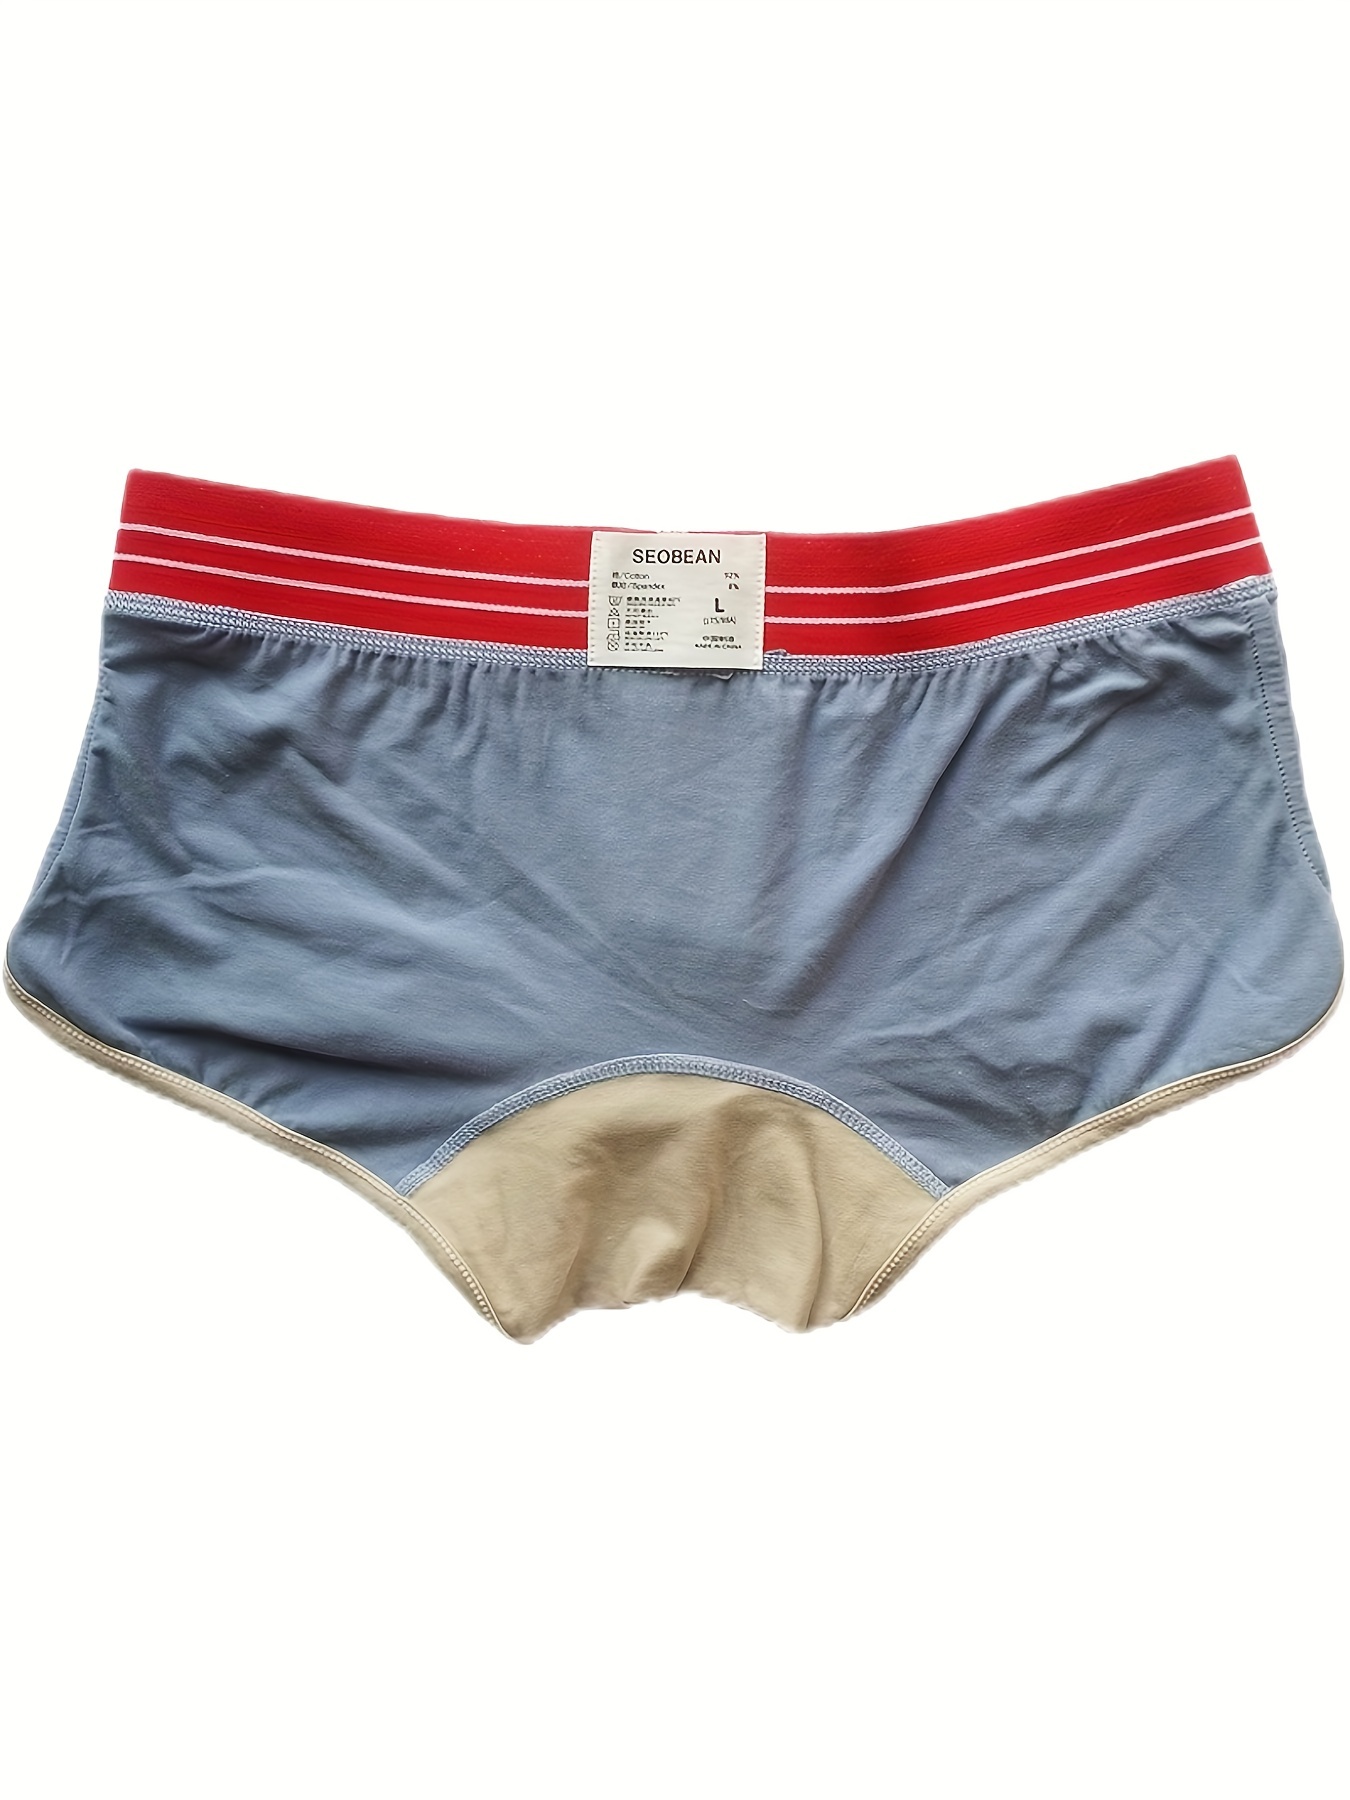 Men's Brand Underwear Pure Cotton Vintage Sexy Sports U Convex Low